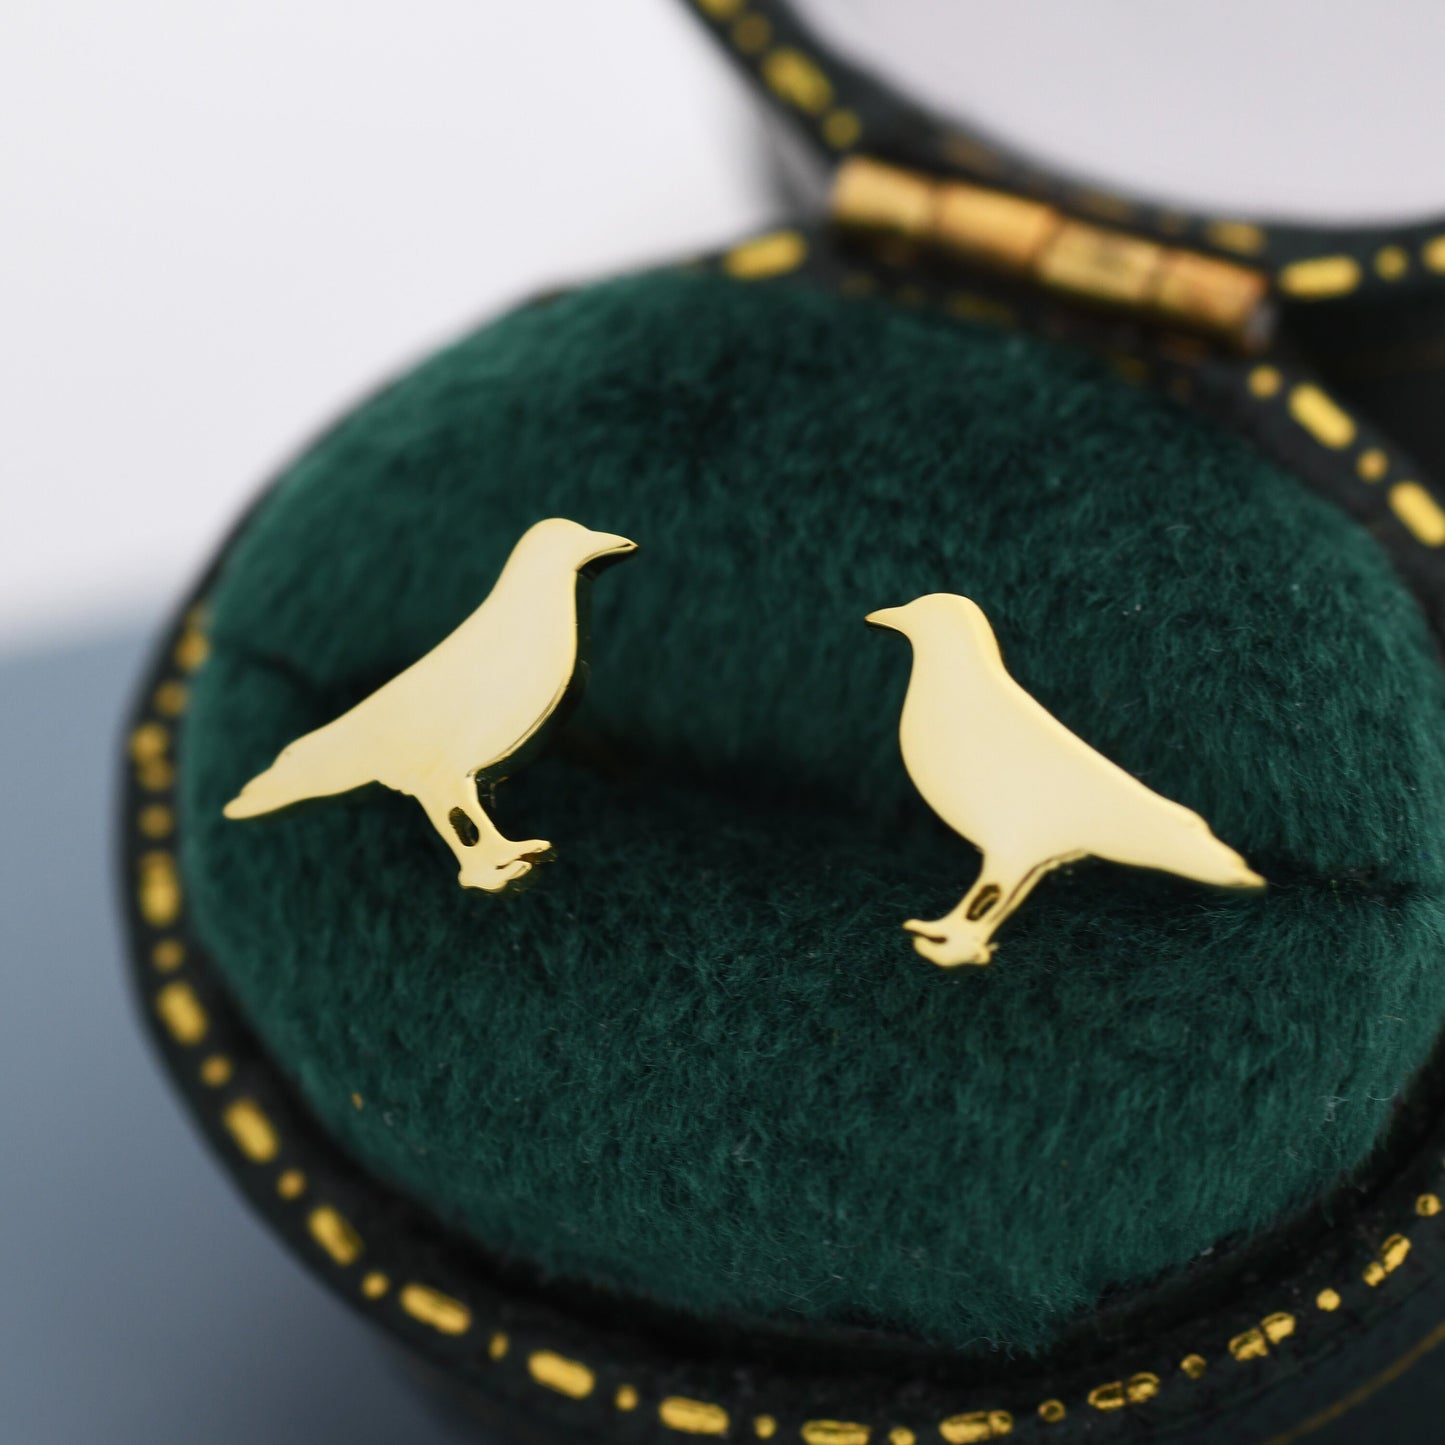 Crow Bird Stud Earrings in Sterling Silver, Silver or Gold, Crow Earrings, Animal Earrings, Nature Inspired